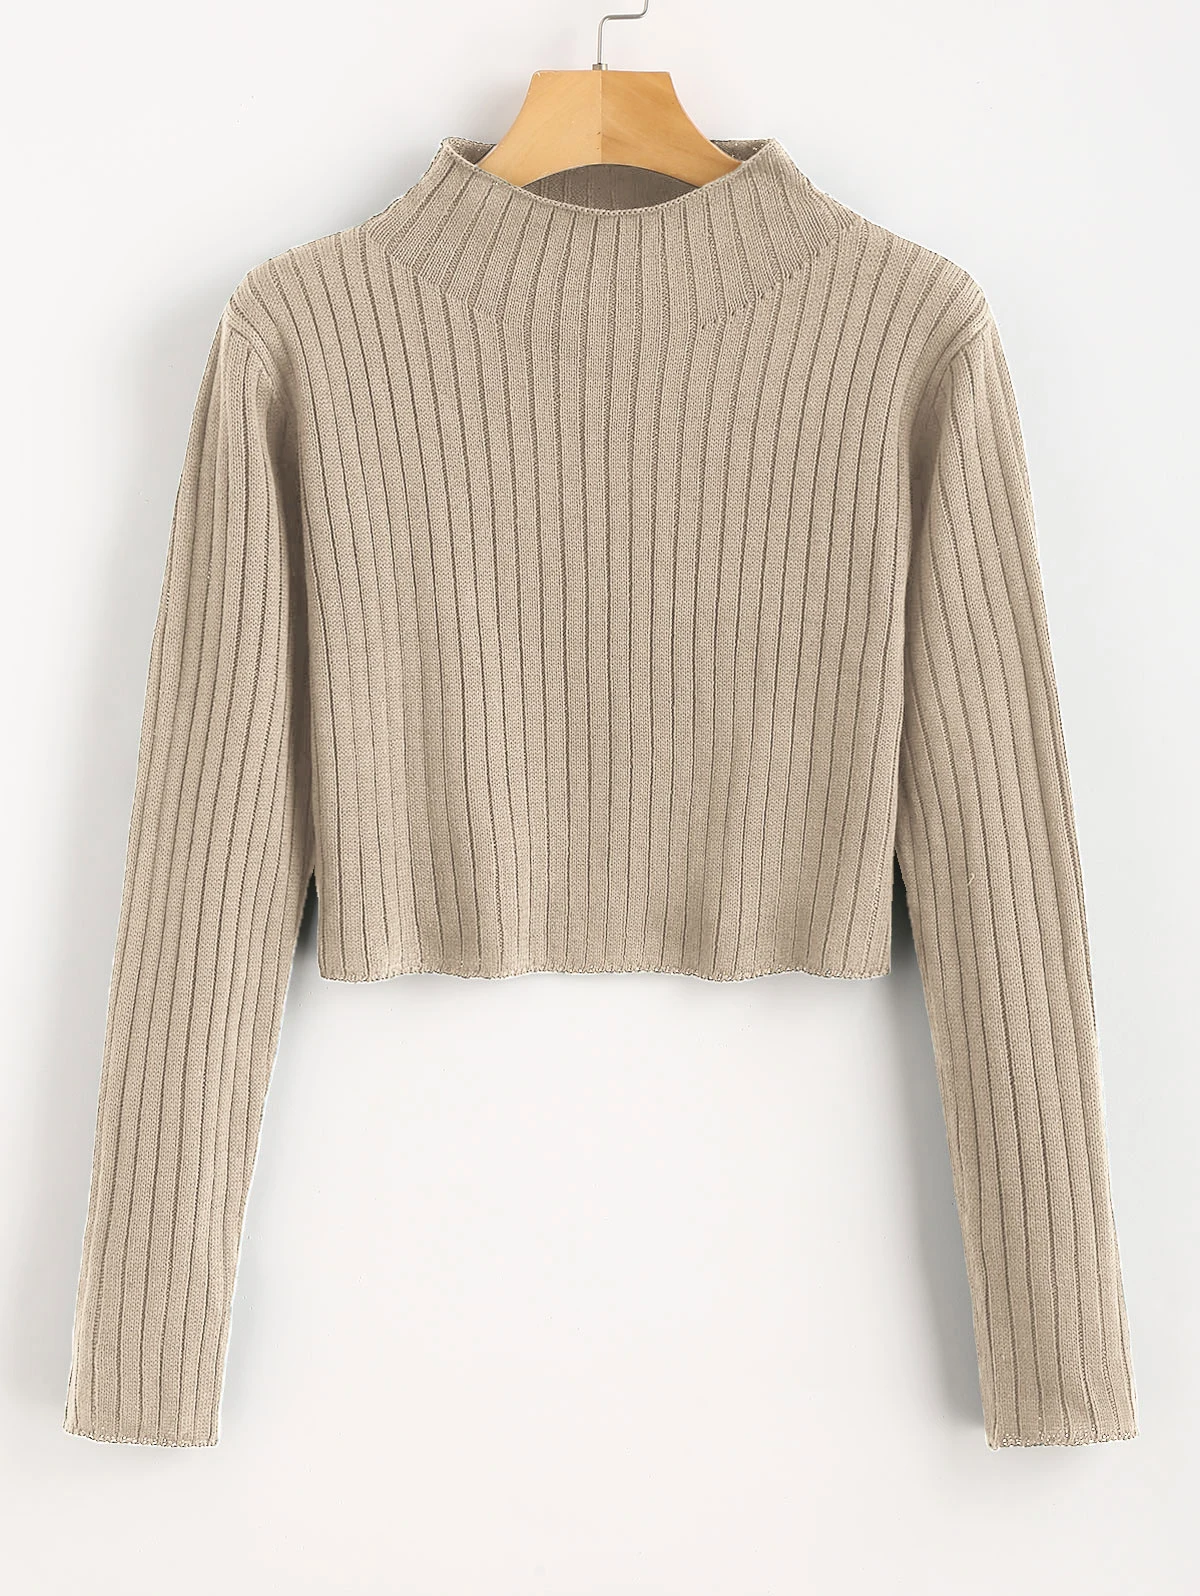 Свитеры ZAFUL, простой пуловер, укороченный свитер для женщин, короткий топ в рубчик, микро-эластичный однотонный обтягивающий пуловер, вязаный джемпер